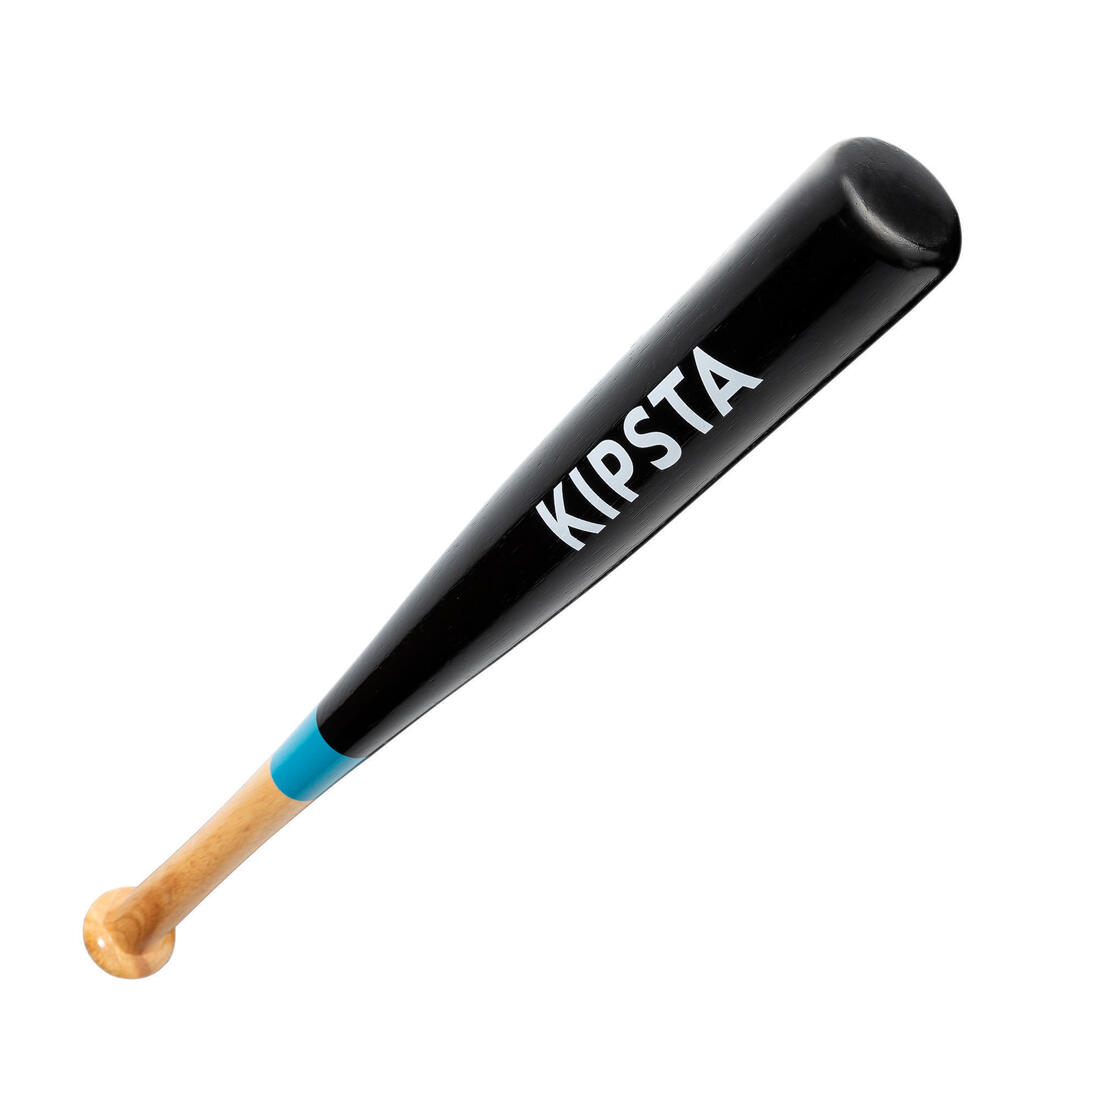 KIPSTA(キプスタ) 野球 木製バット入りセット BA180 ジュニア